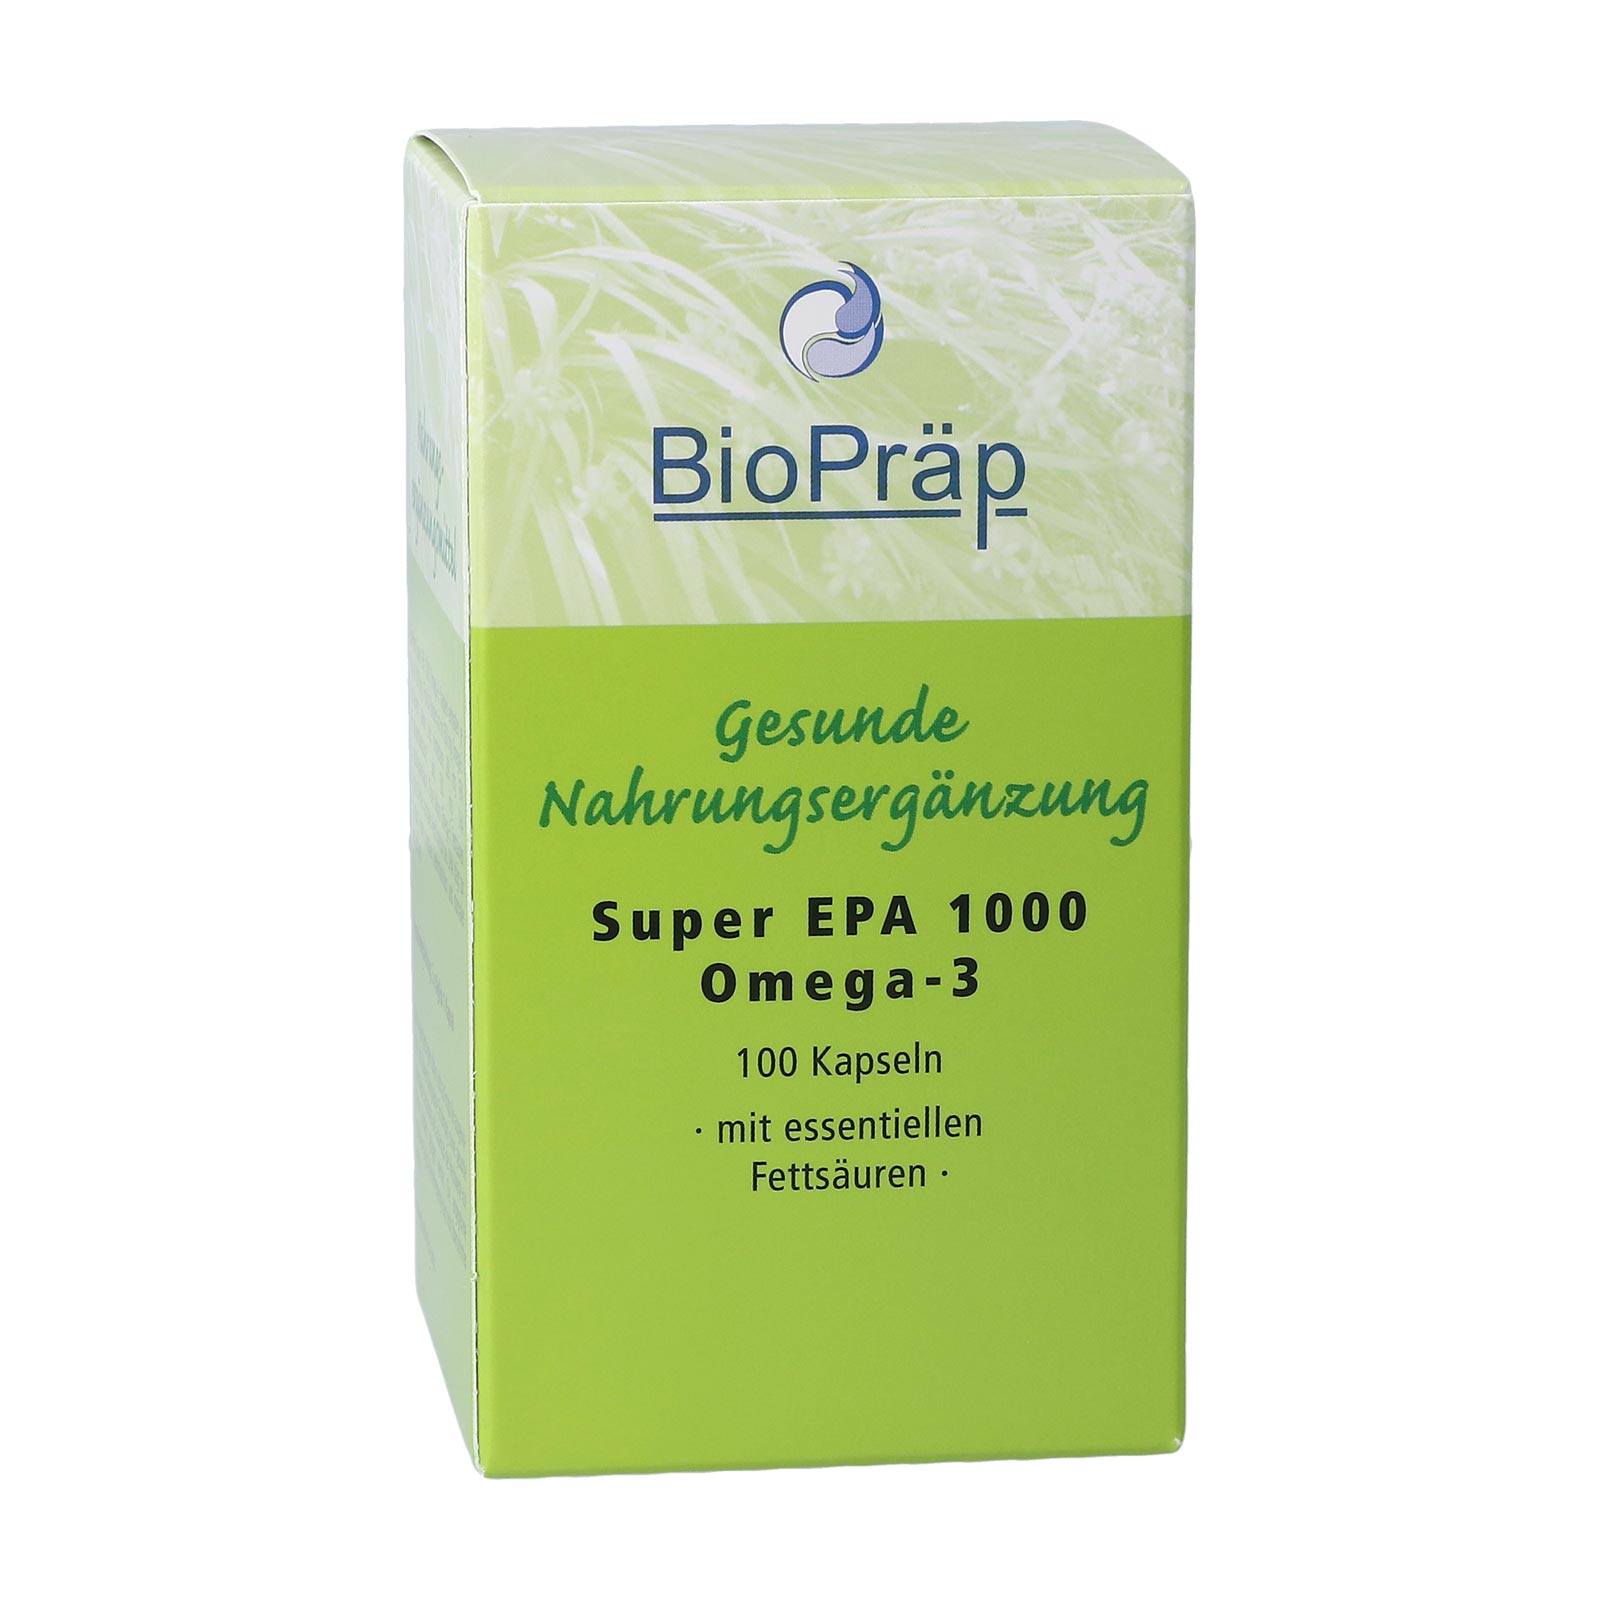 Omega 3 organic perilla oil capsules, vegan - PureNature